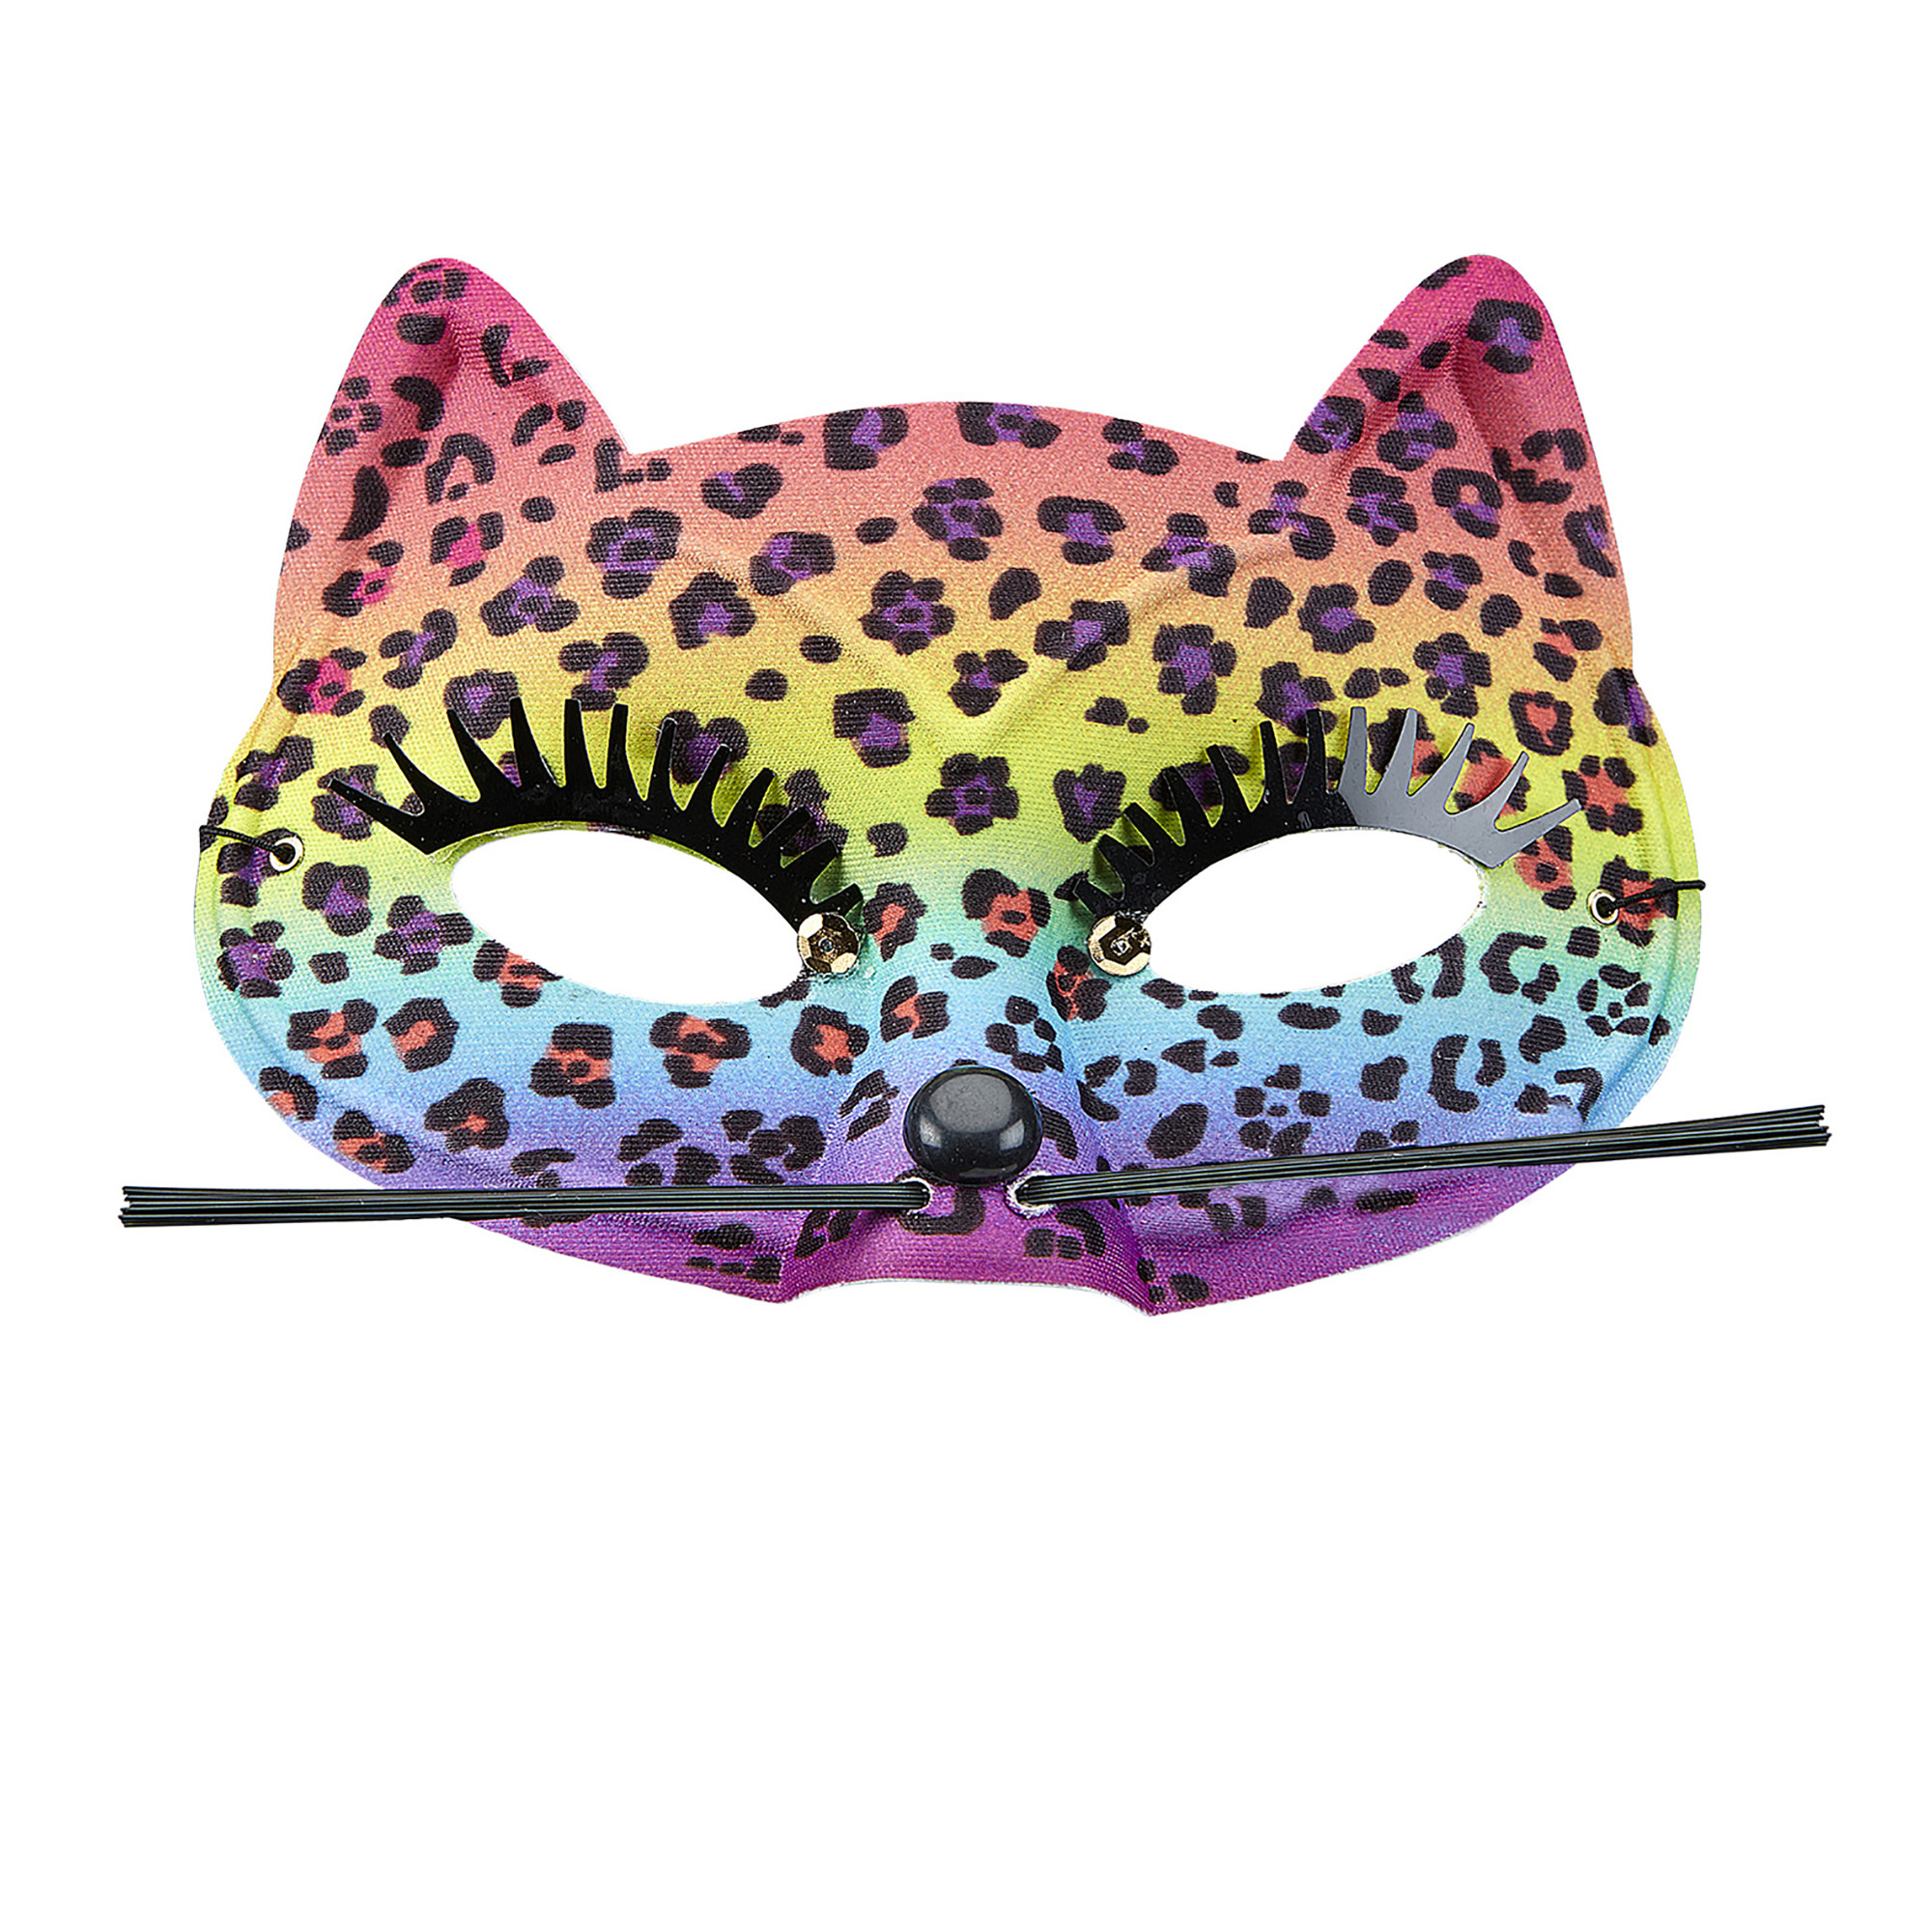 oogmasker luipaard regenboog